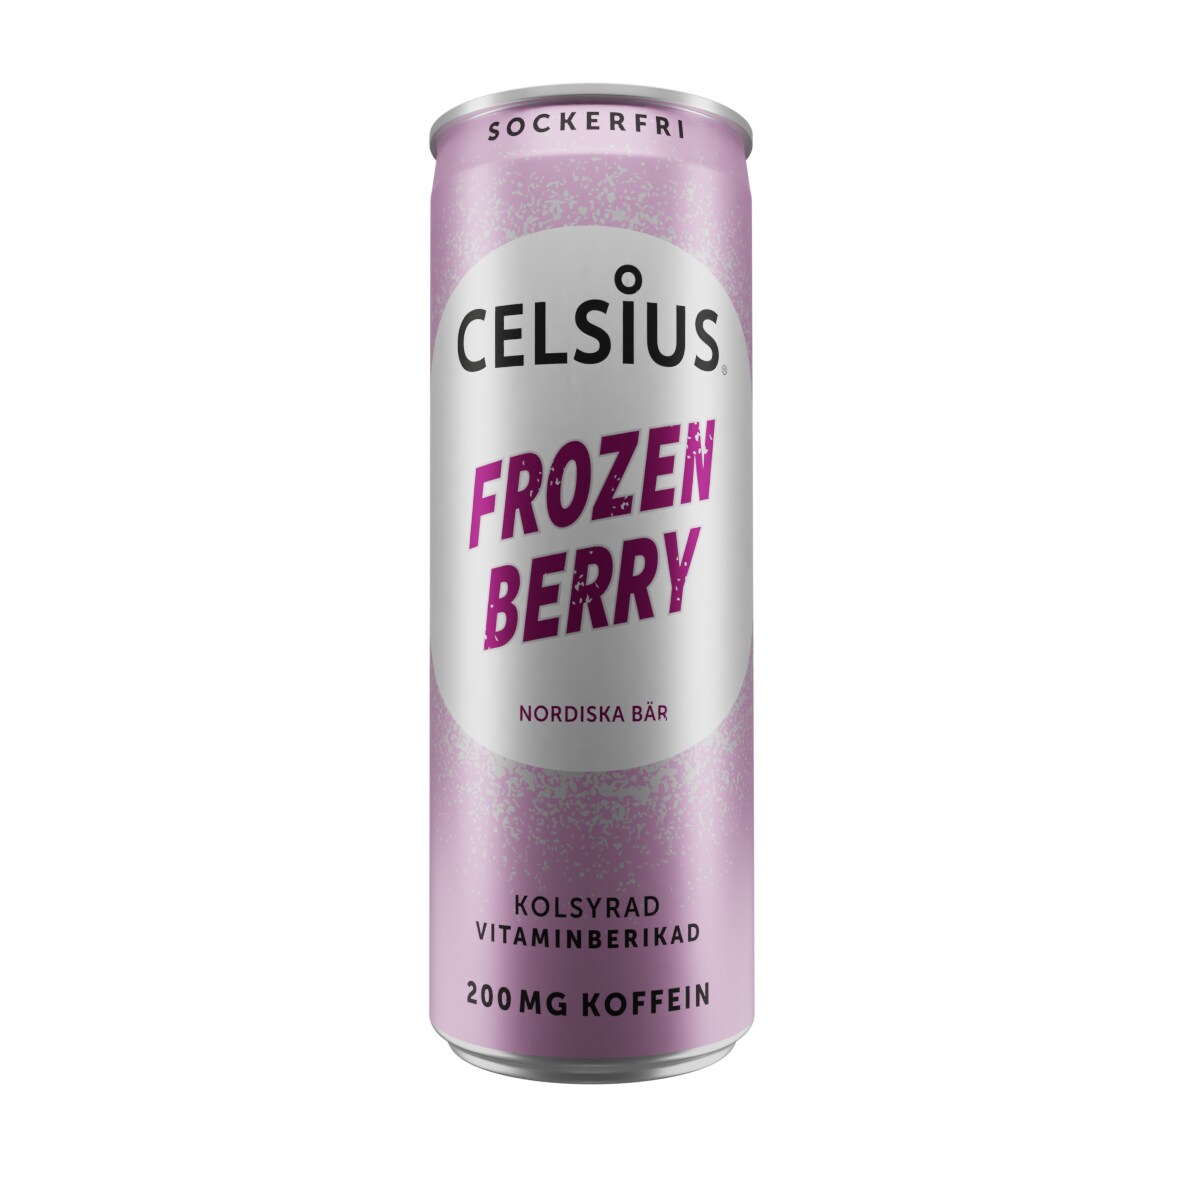 Celsius Frozen Berry